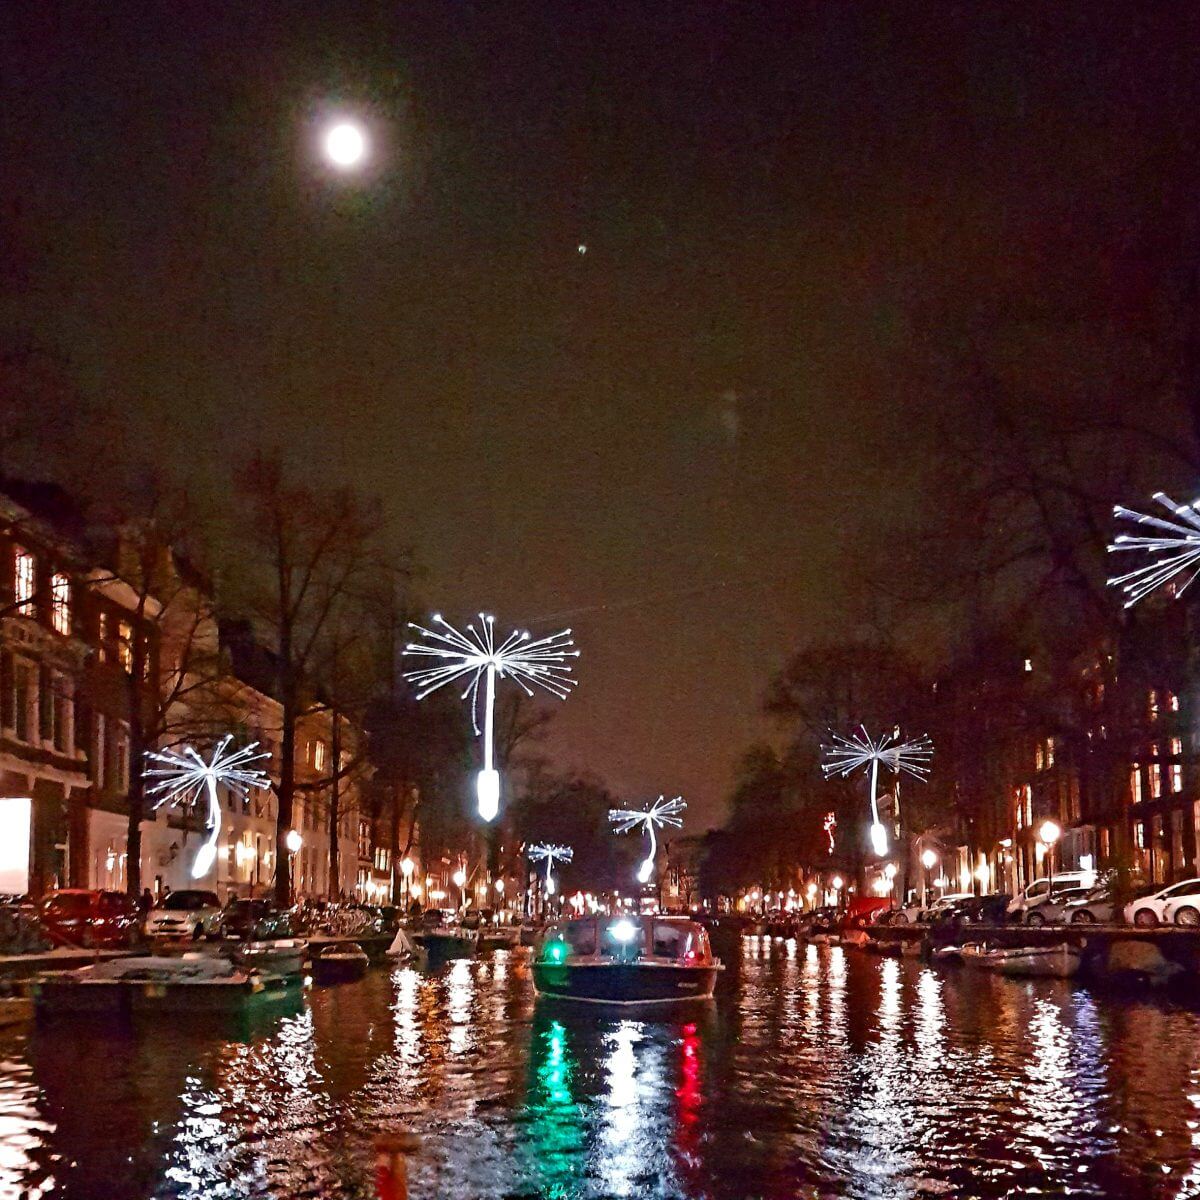 Amsterdam Light Festival: leuke en handige tips met kinderen en tieners. Ieder jaar gaan we naar het Amsterdam Light Festival met de kinderen. Het is inmiddels echt een jaarlijkse traditie. In dit artikel delen we handige en leuke tips voor dit familie uitje.